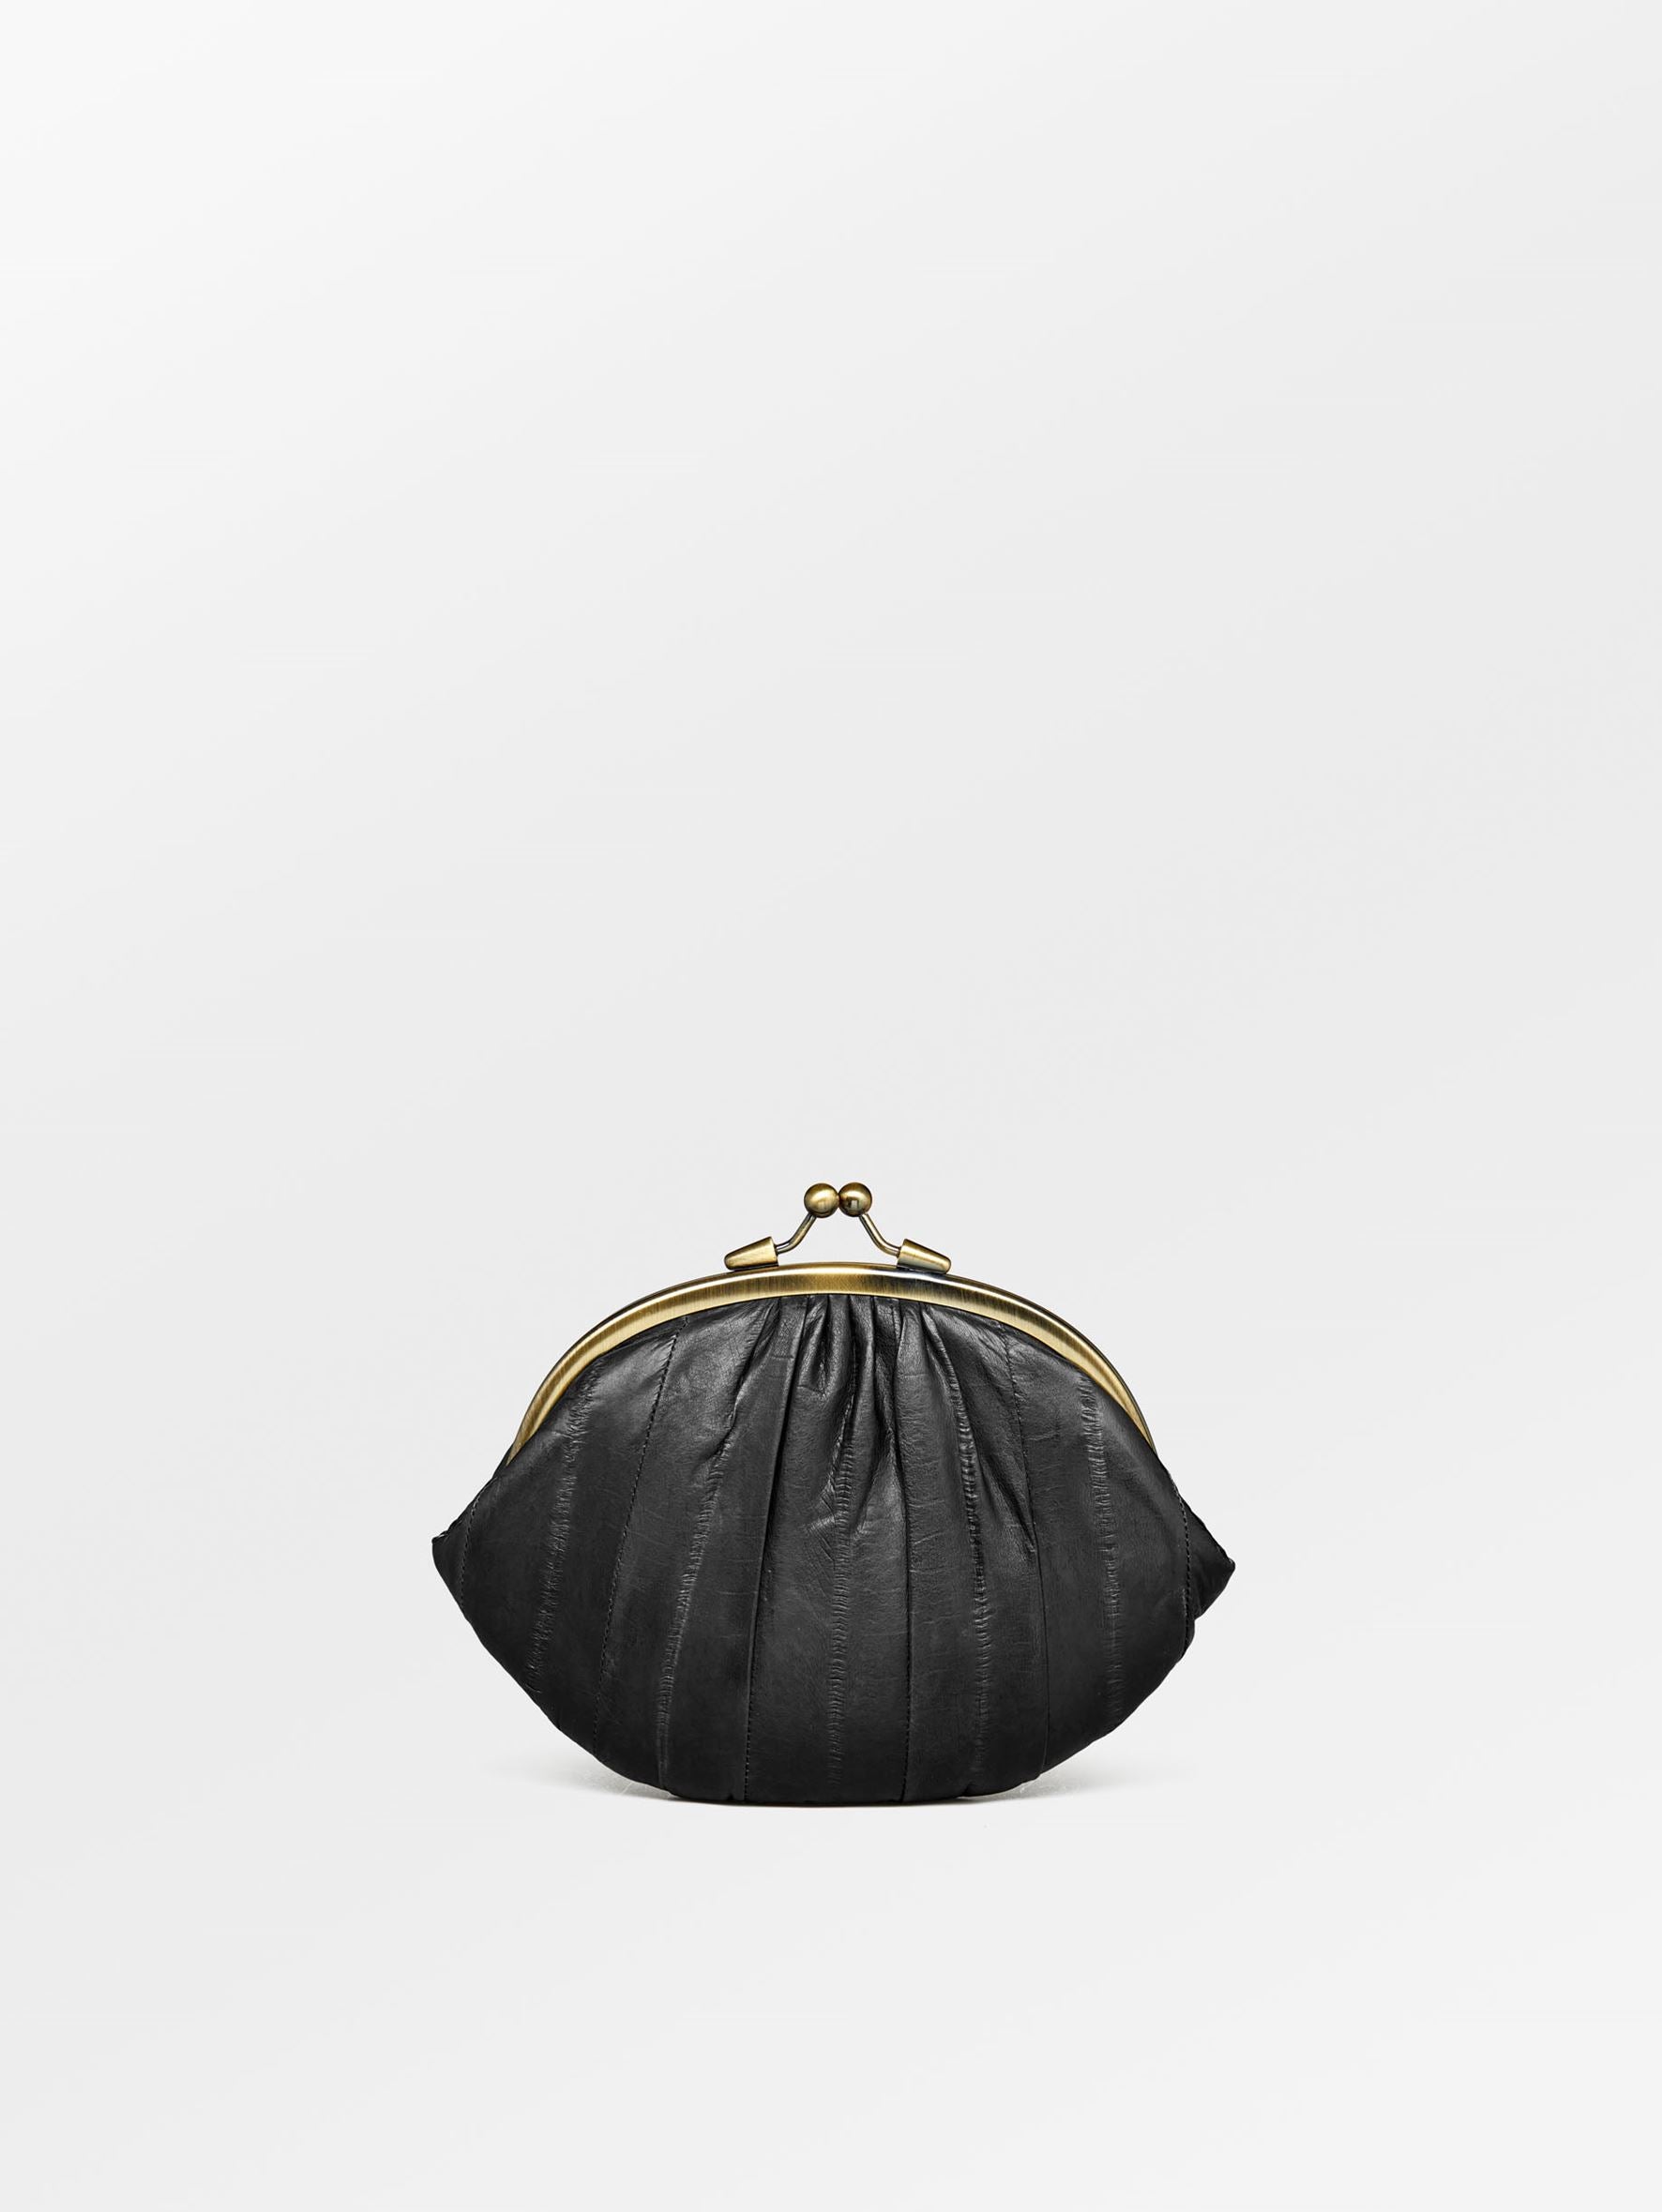 Becksöndergaard, Granny Purse - Black, accessories, sale